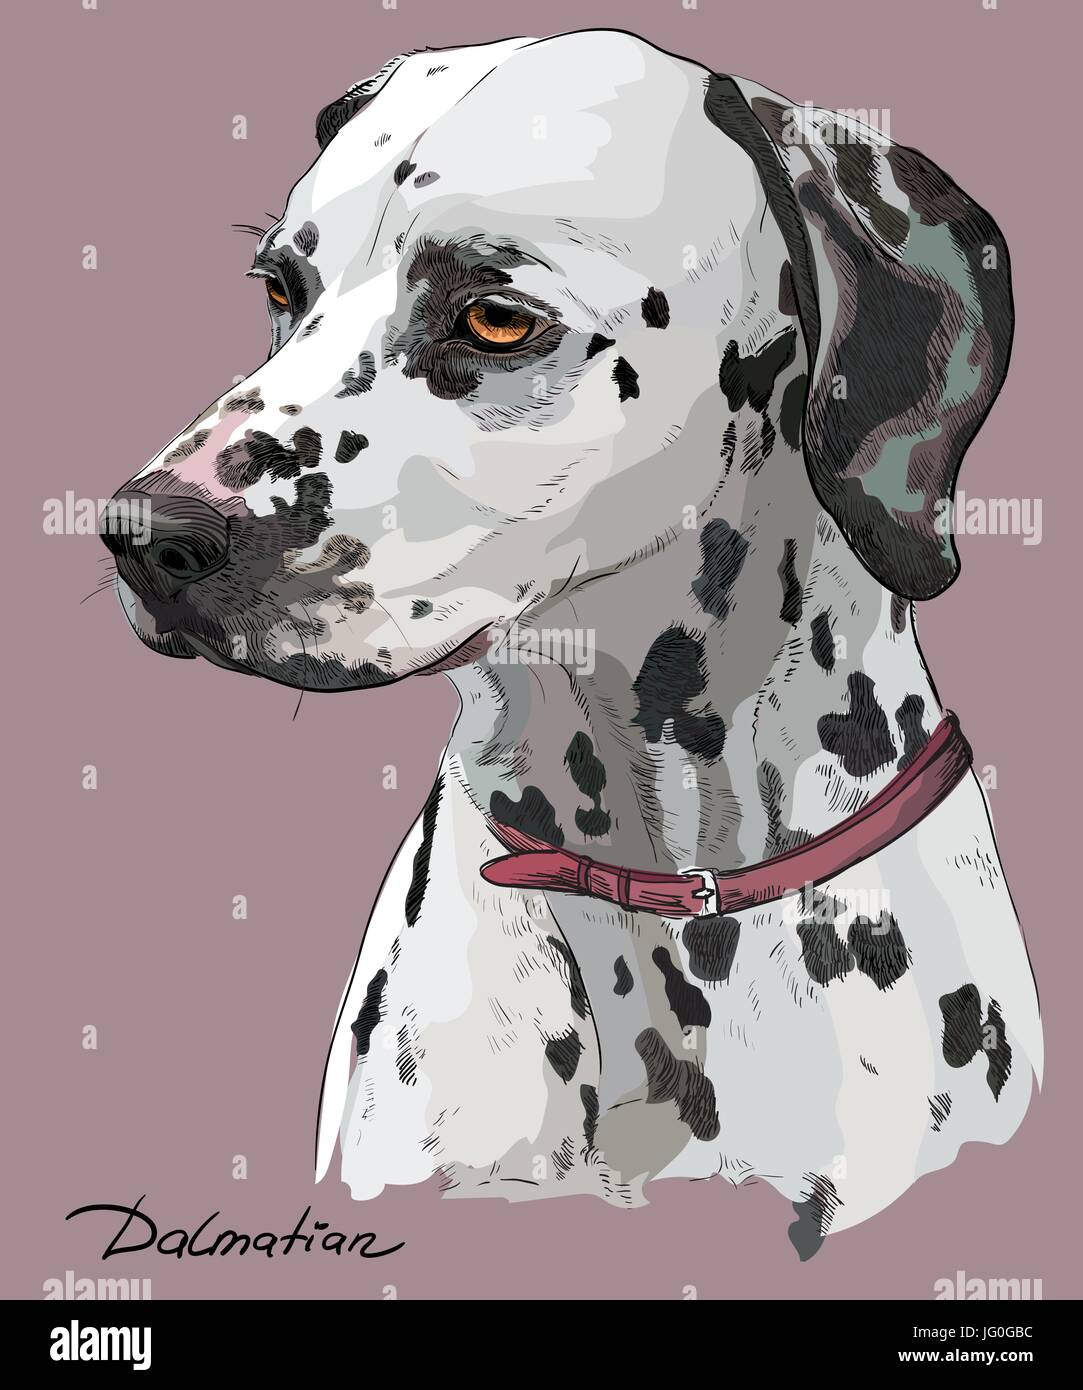 Coloful part dessin vectoriel portrait de chien dalmatien en profil sur fond rose Illustration de Vecteur